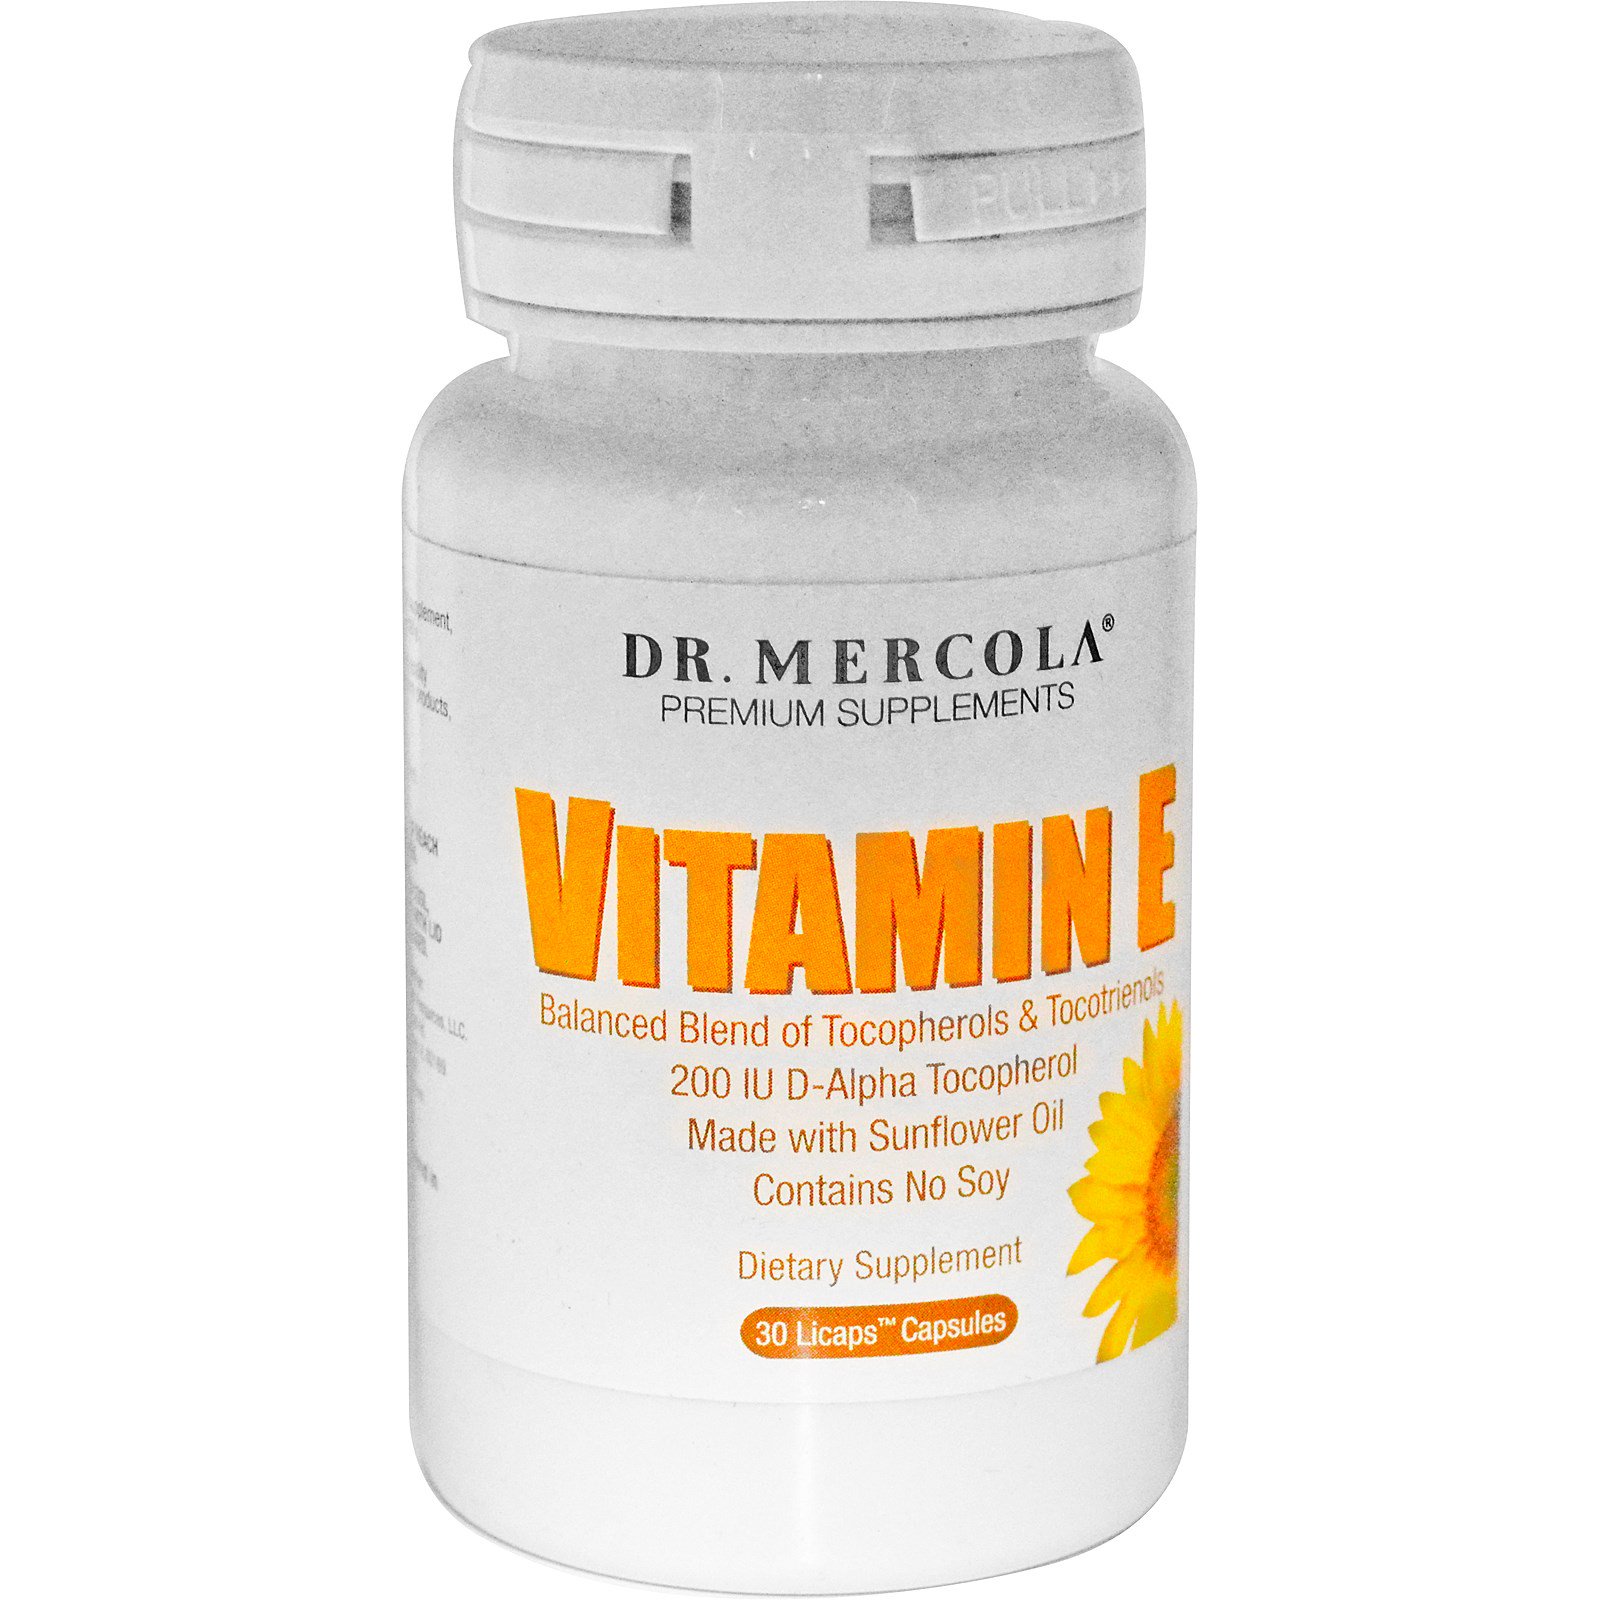 Vitamin купить в москве. Витамин с Dr Mercola. Dr. Mercola, витамин e, 30 капсул. Dr Mercola витамин е. Витамин е комплекс токоферолов и токотриенолов.